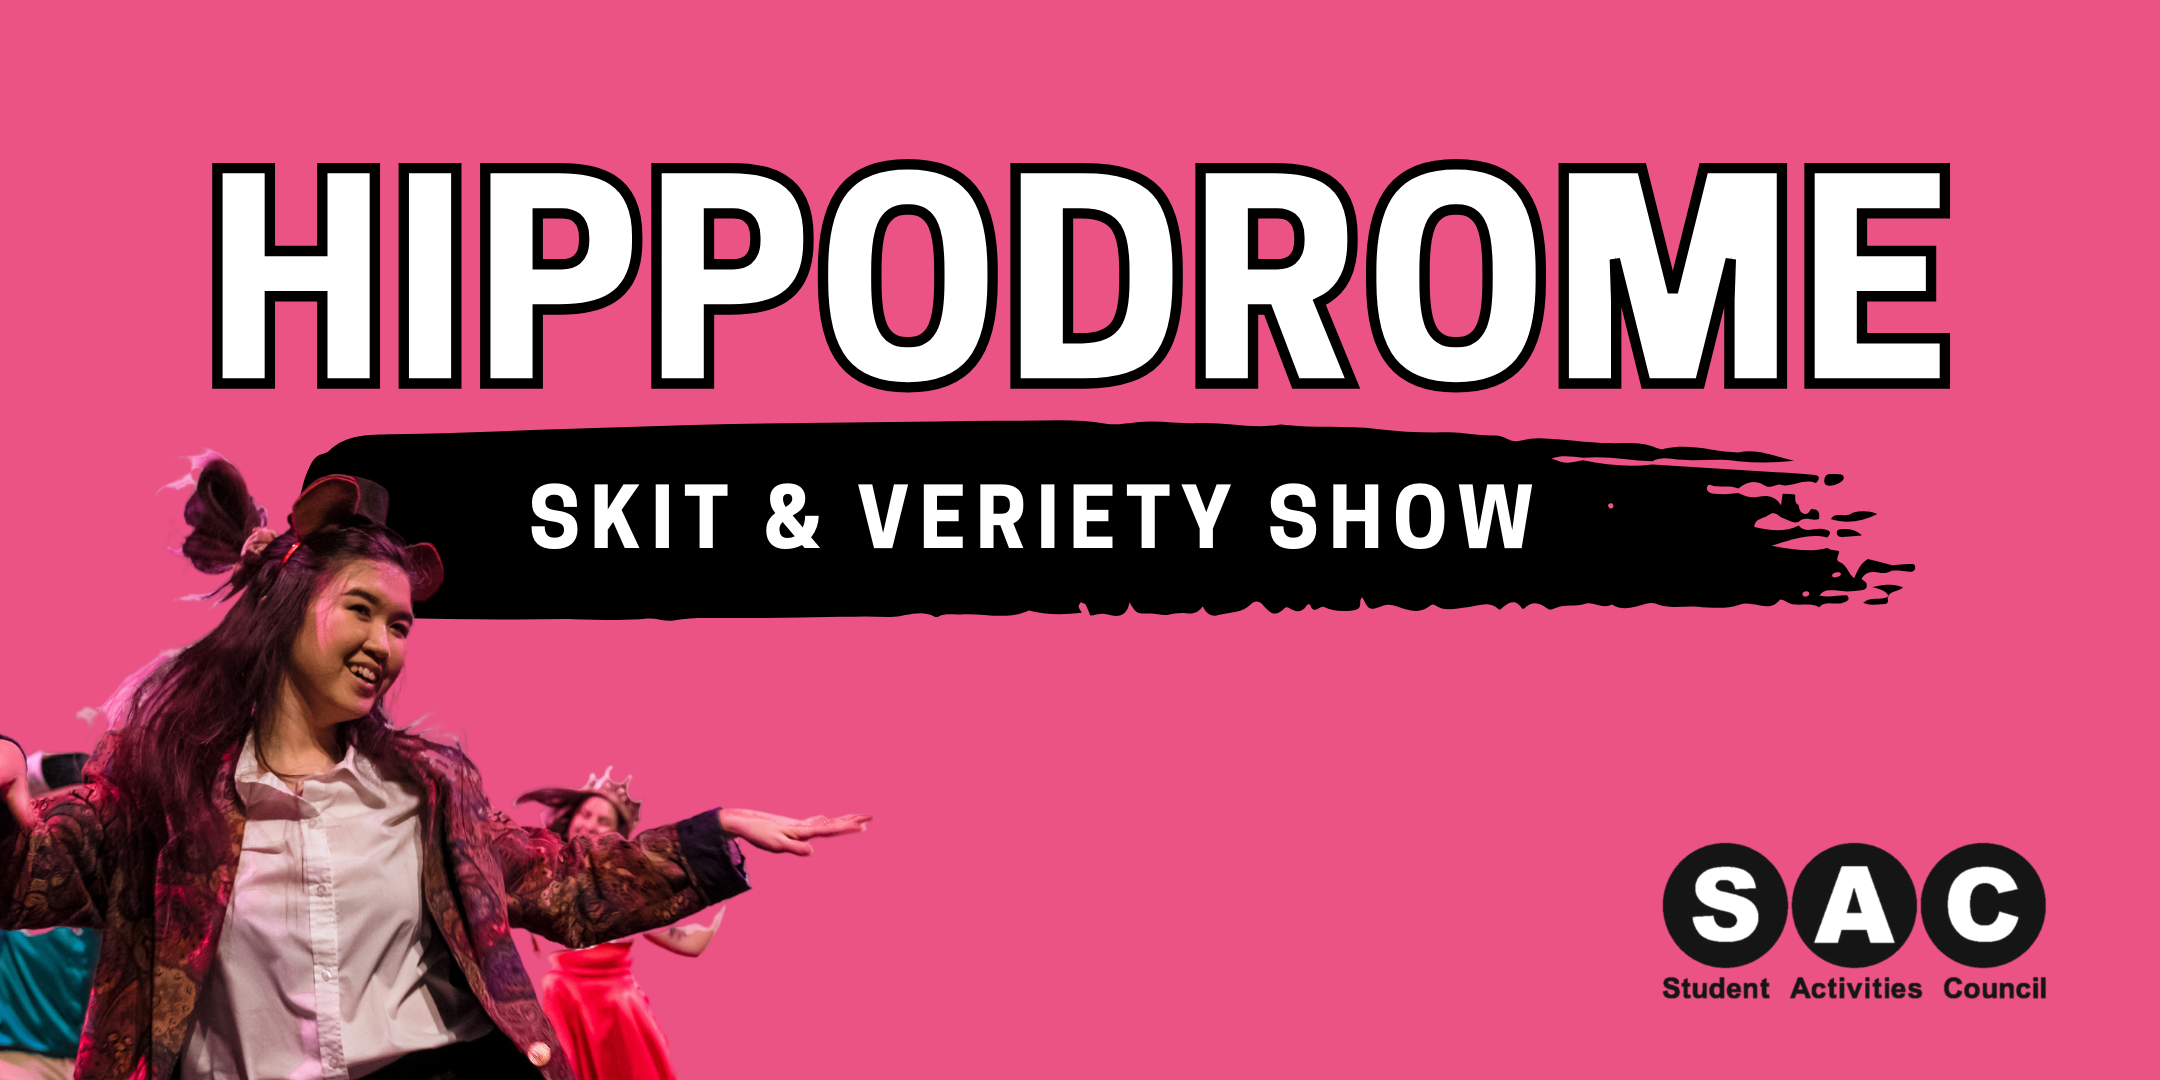 Hippodrome Skit & Variety Show